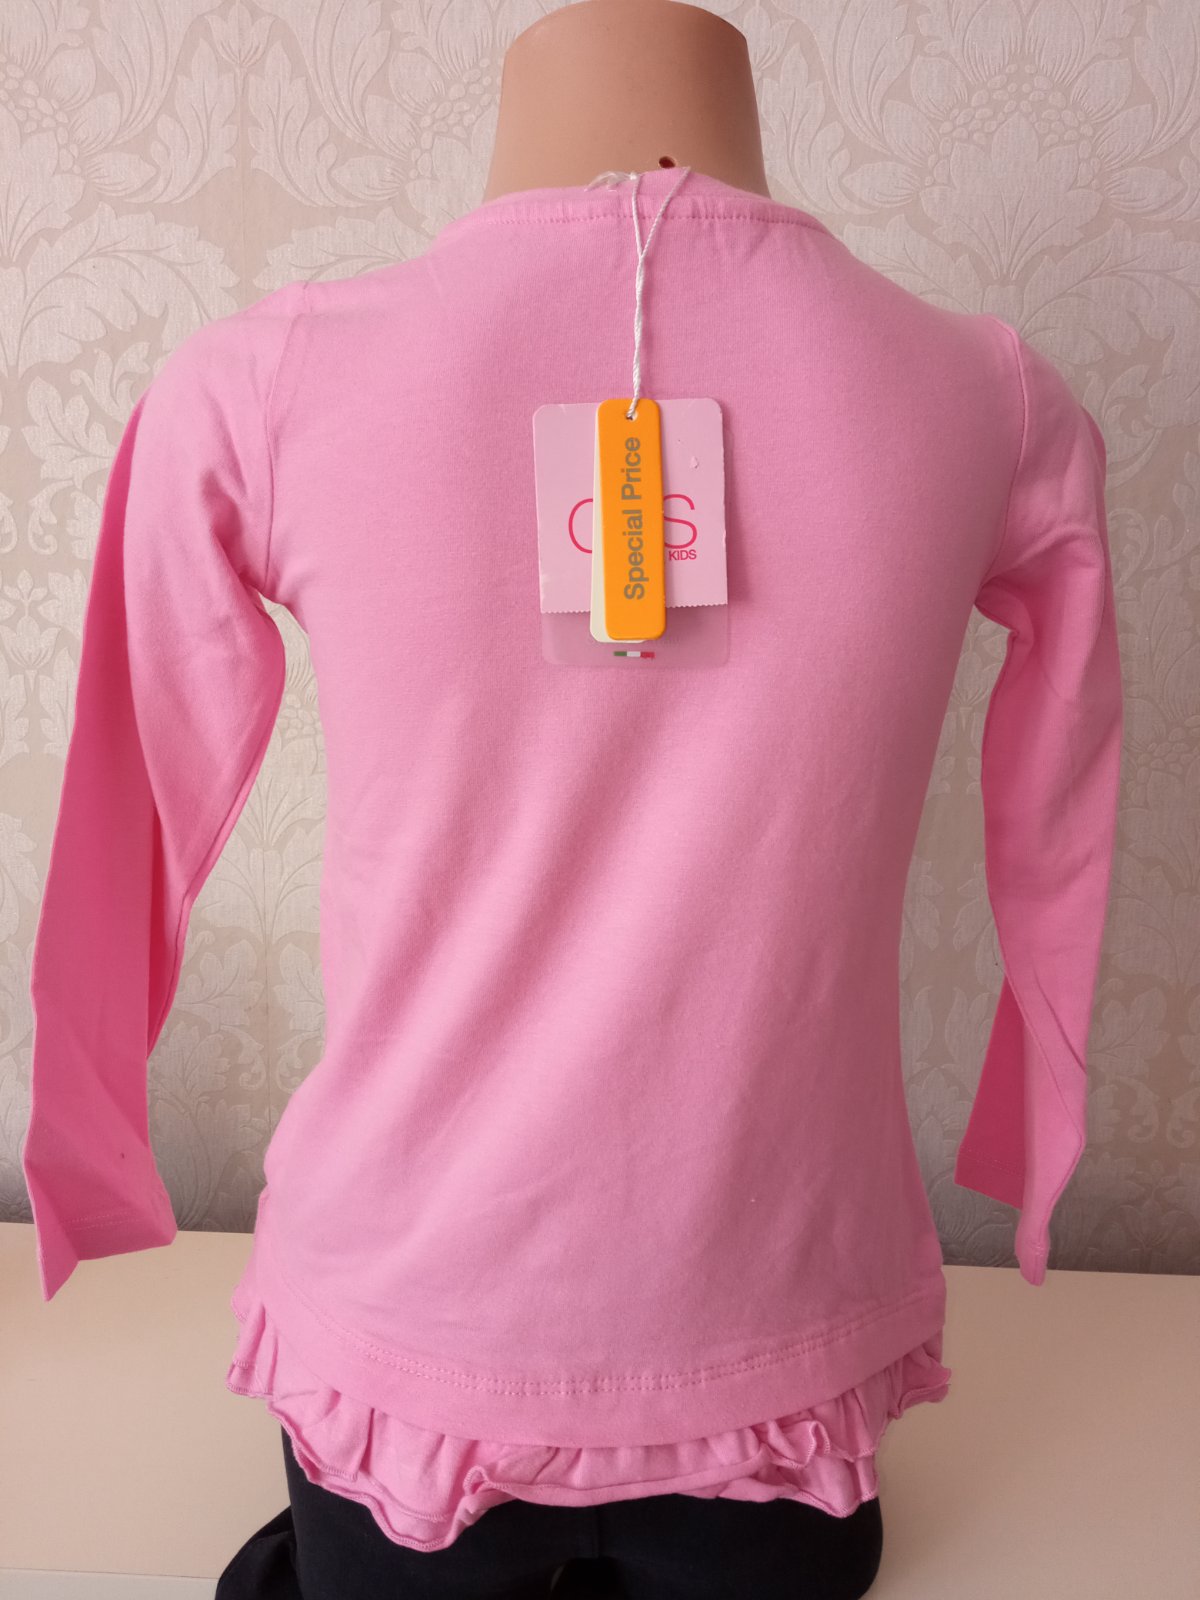 Ružové tričko dlhý rukáv so zajačikom,4-5 r.